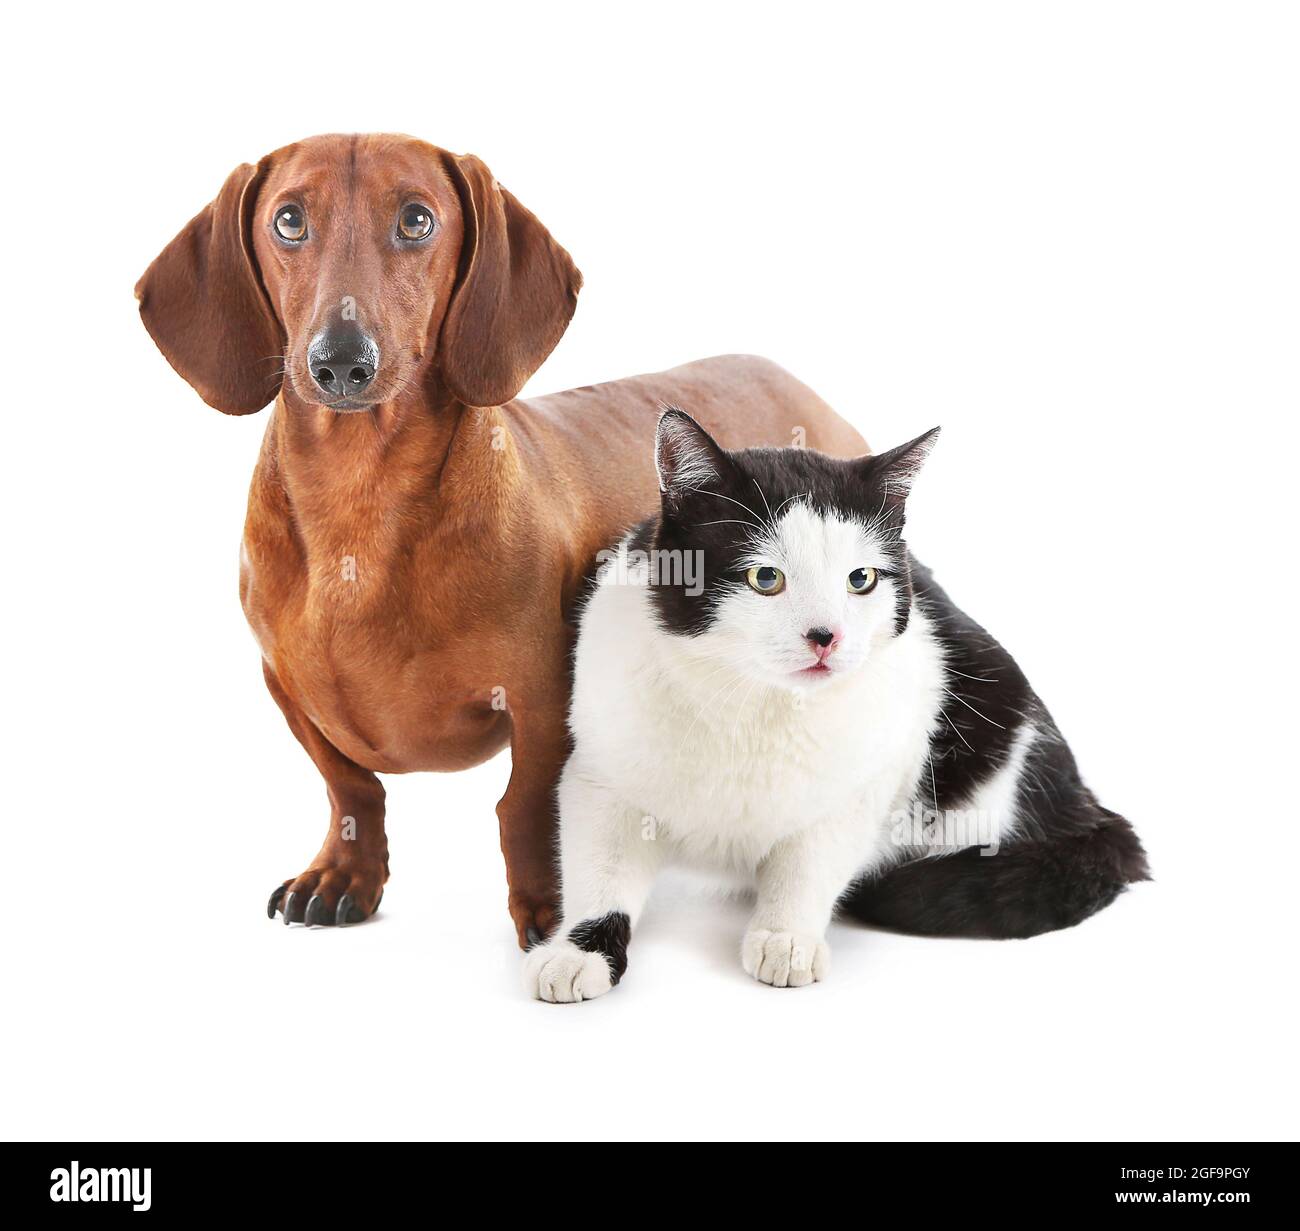 Dackel und Katze auf weißen isoliert Stockfotografie - Alamy